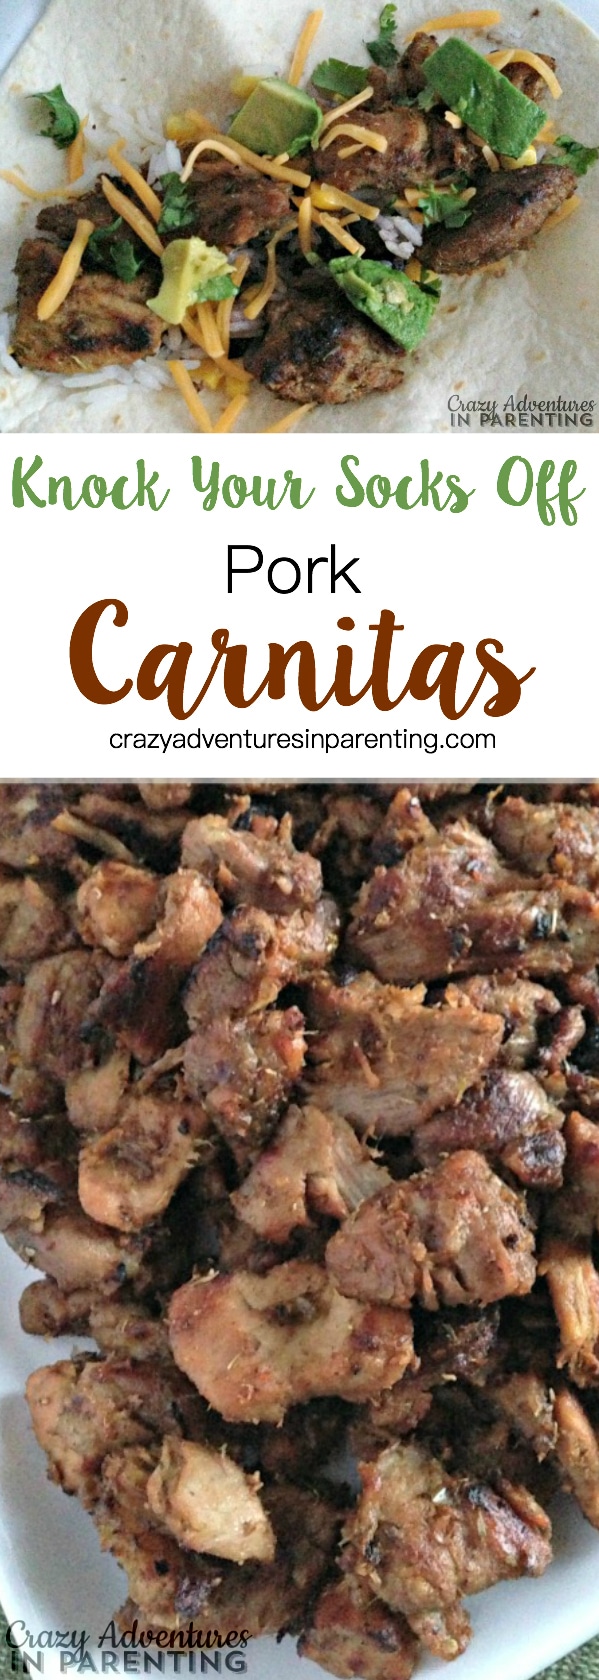 Knock Your Socks Off Pork Carnitas Recipe